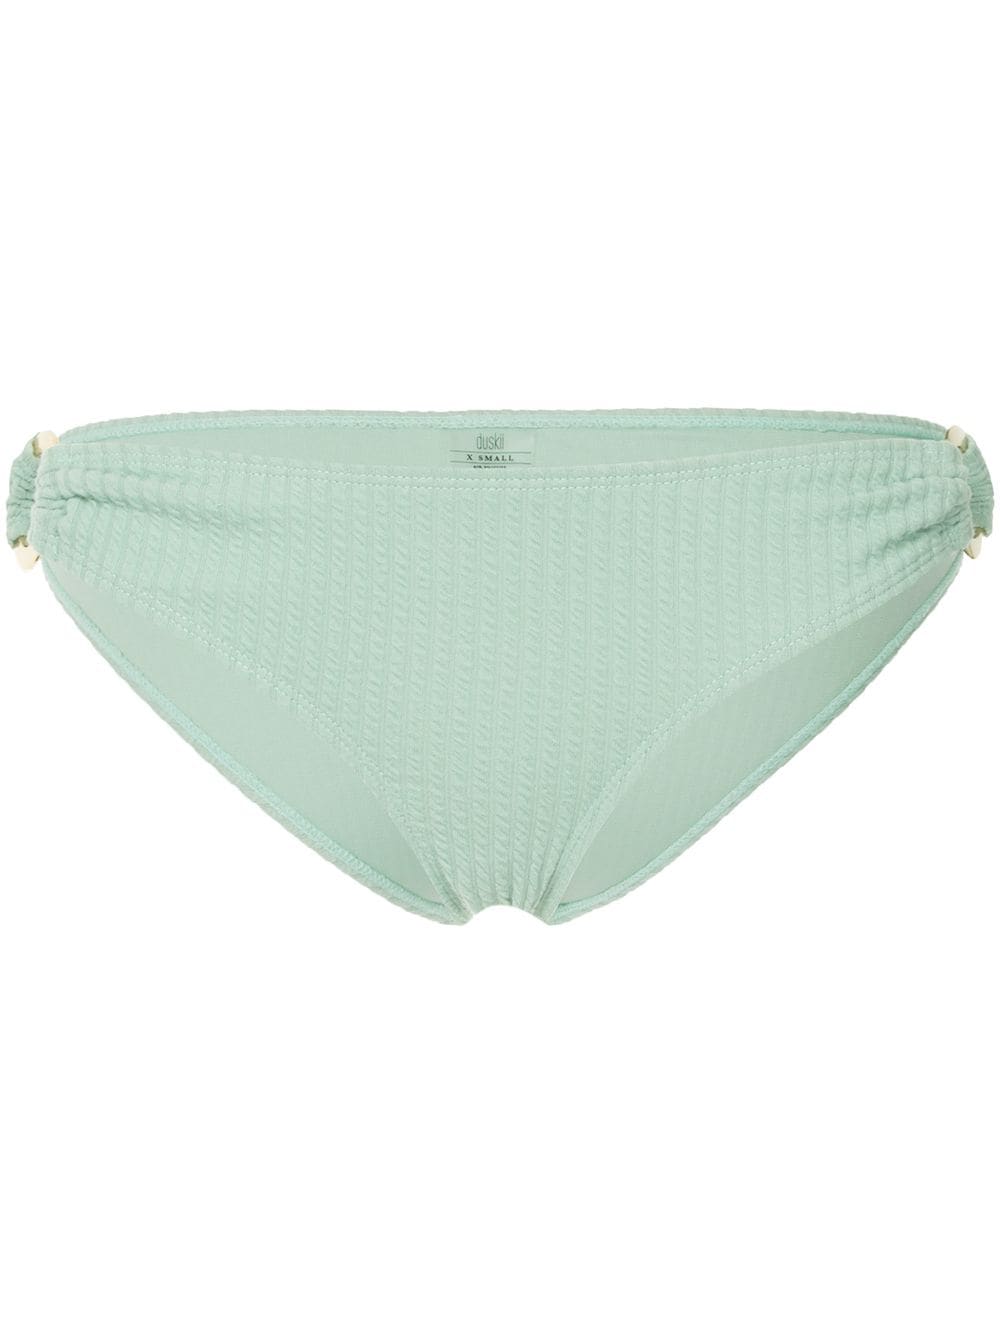 Duskii Cyprus bikini bottoms - Green von Duskii